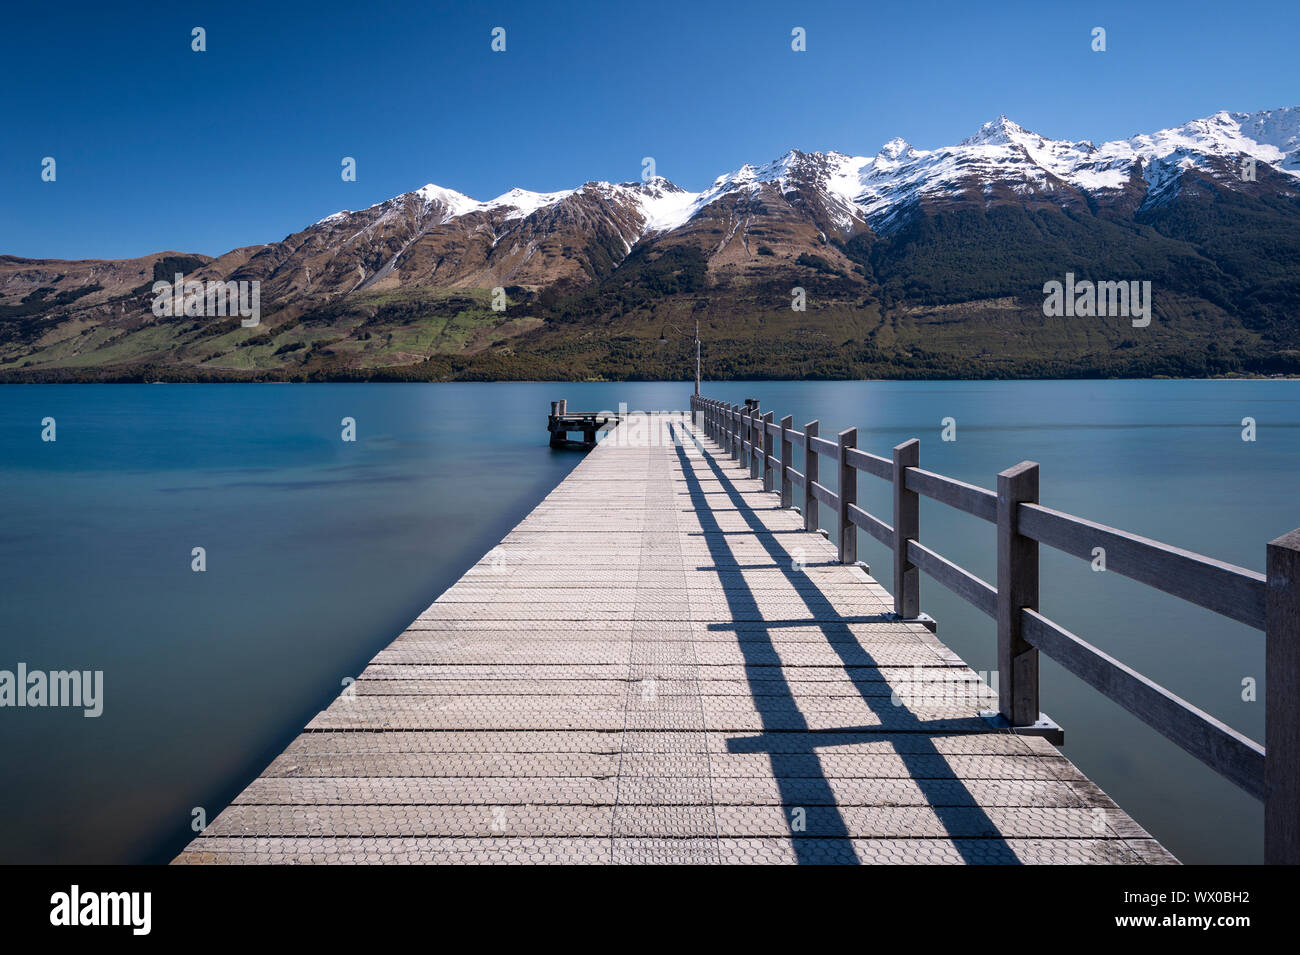 Jetée en bois menant au lac Wakitipu turquoise, Queenstown, Otago, île du Sud, Nouvelle-Zélande, Pacifique Banque D'Images